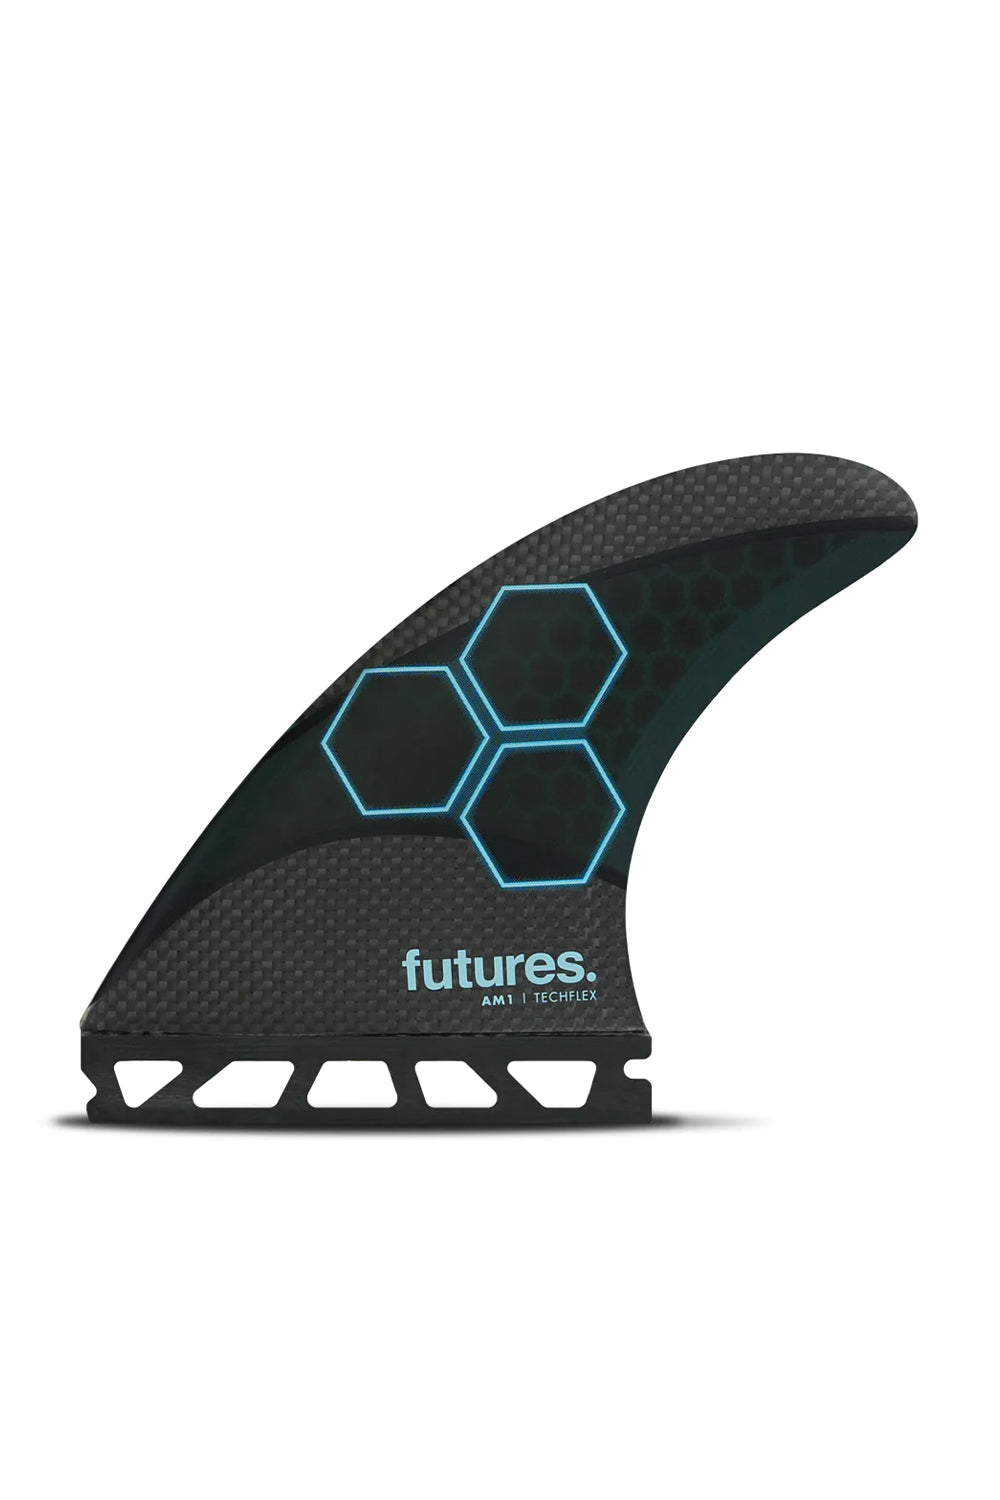 Futures Fins AM1 Tech Flex Thruster Fin Set - Medium